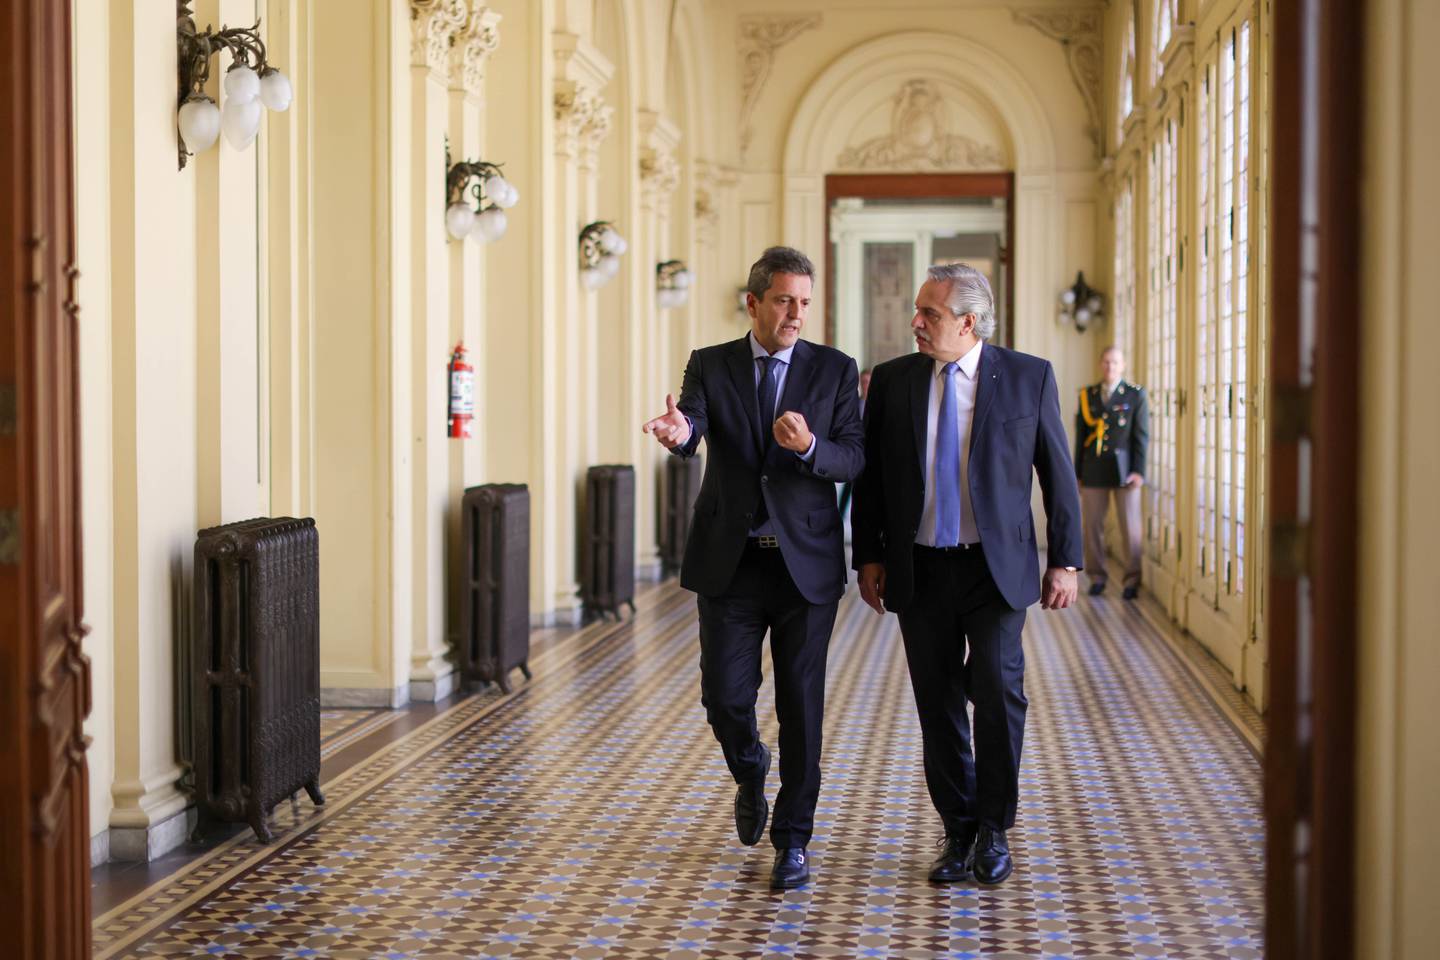 El presidente de la Nación junto al presidente de la Cámara de Diputados, quien llegaría al Gabinete en los próximos días